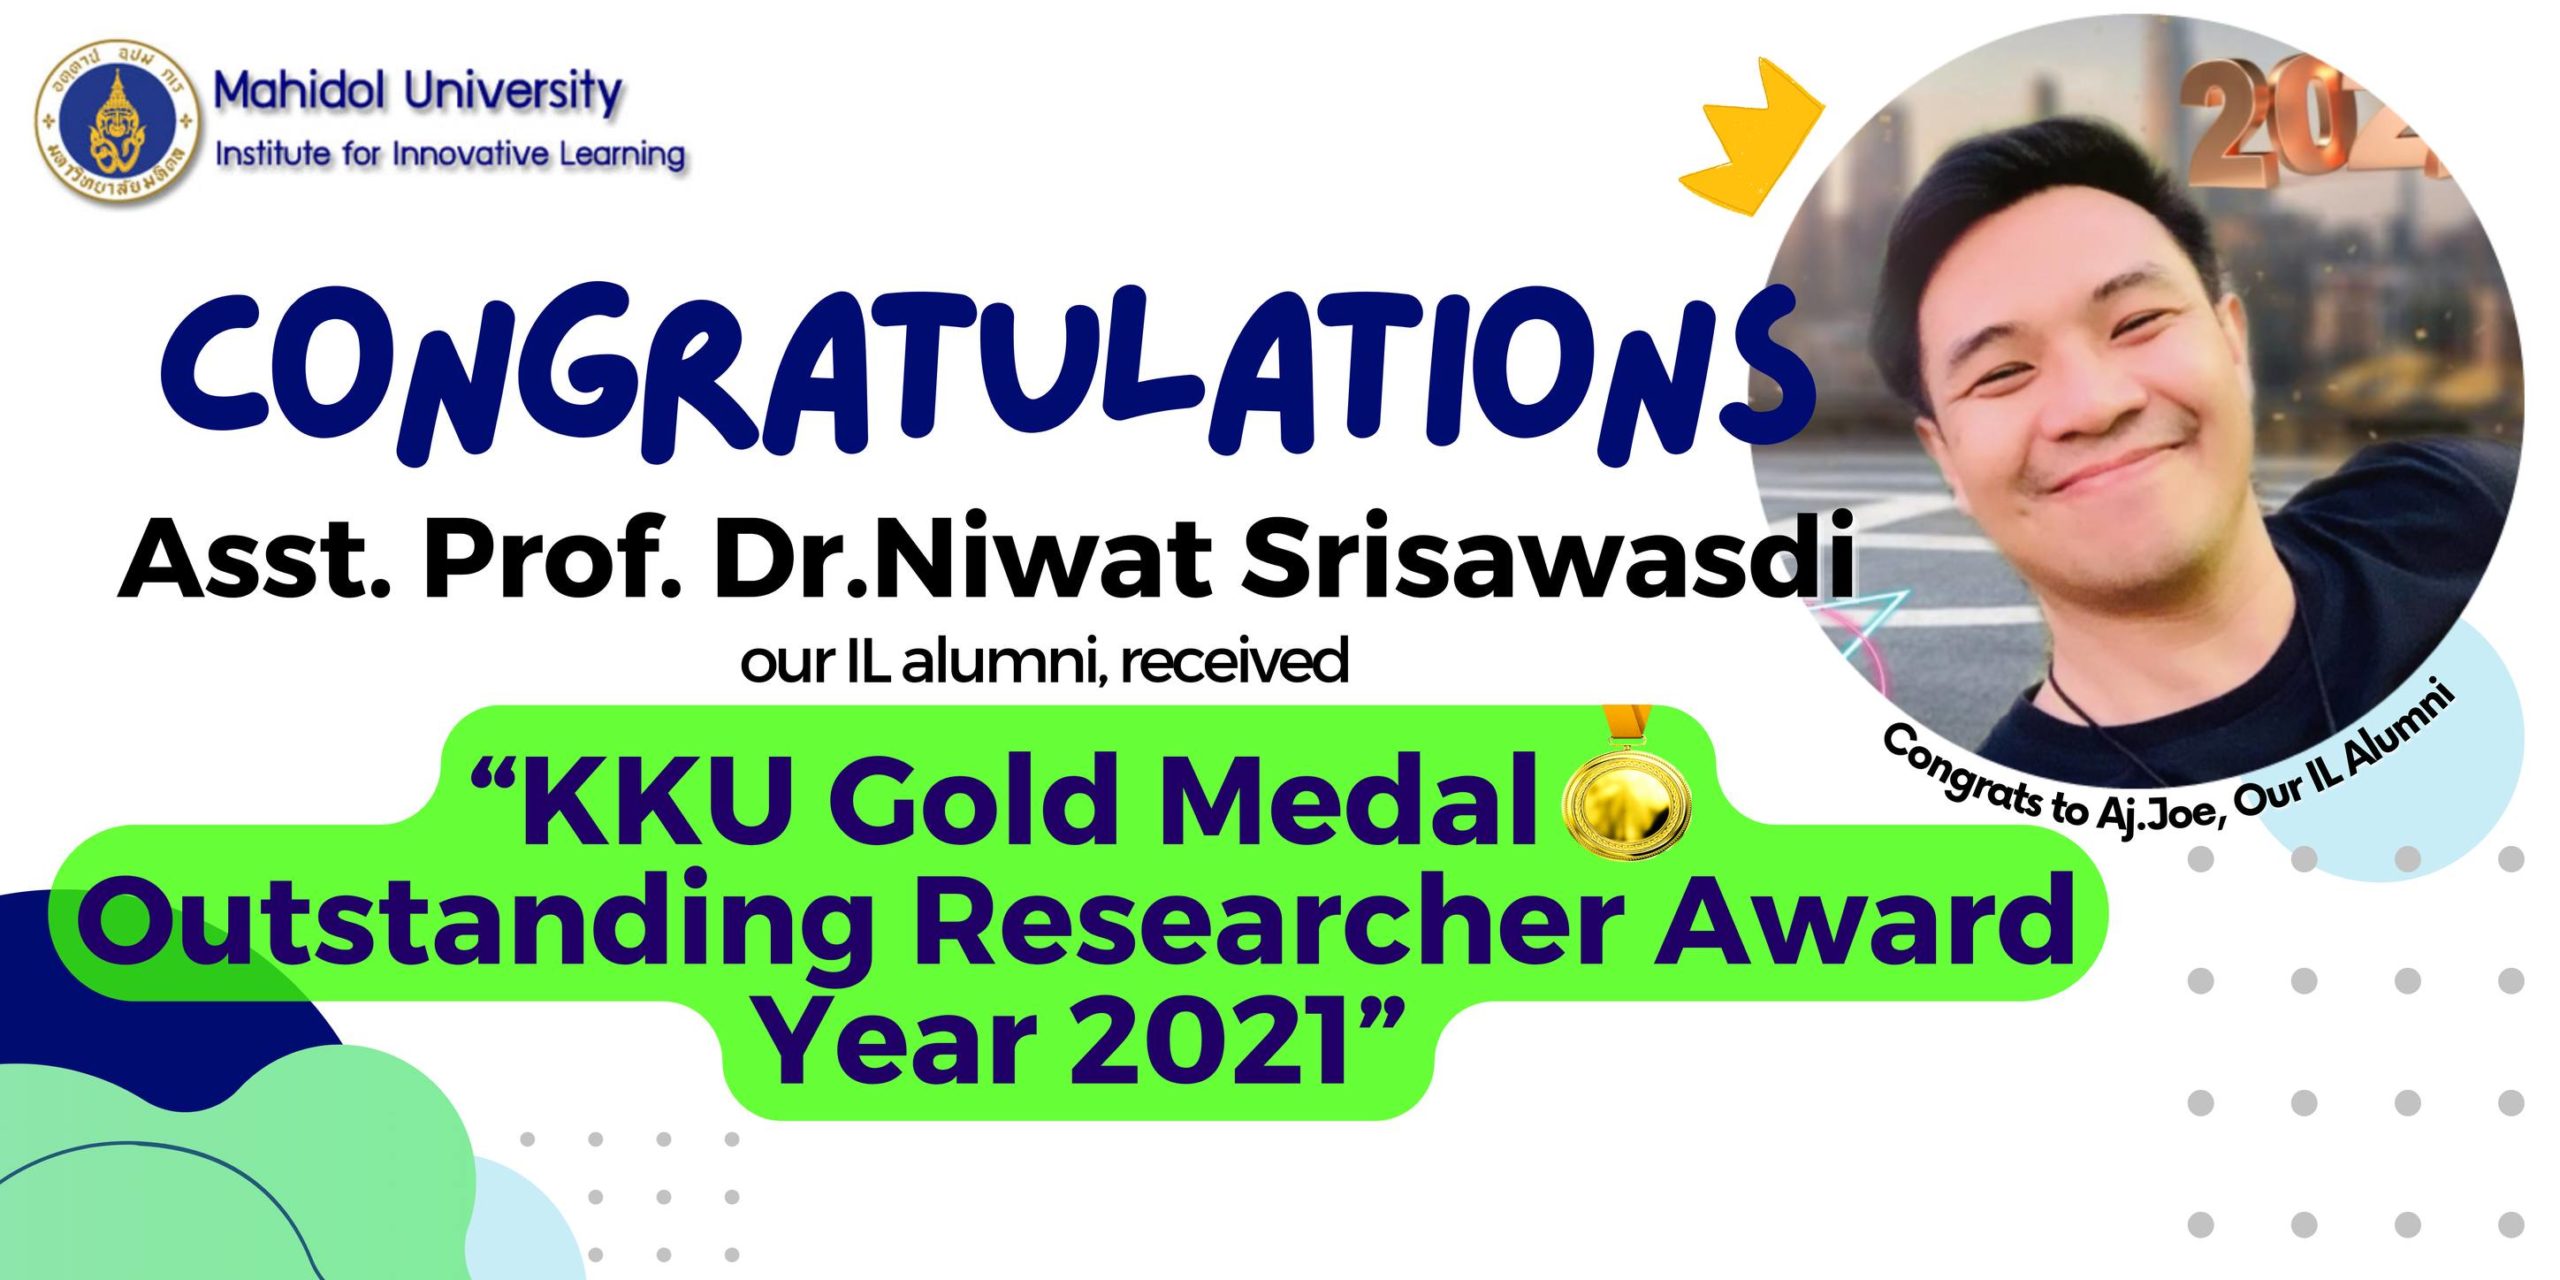 Congratulations to Asst. Prof. Dr.Niwat Srisawasdi